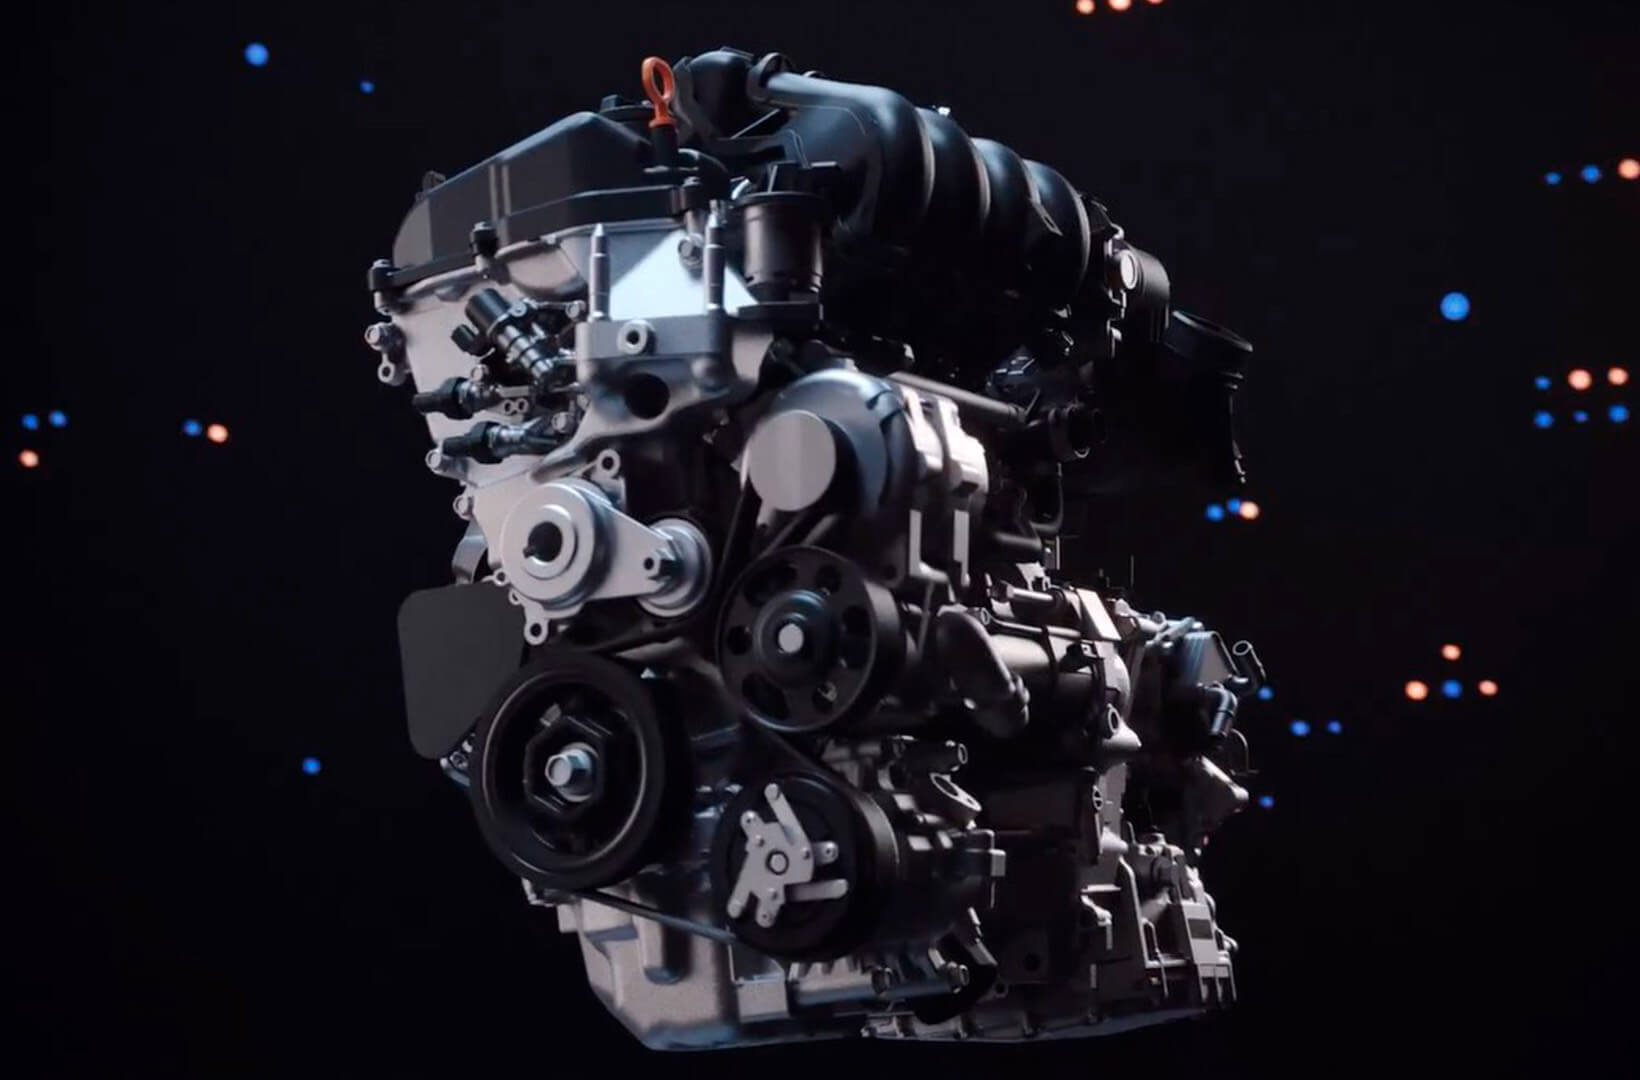 Novo Motor com 1.5L DOHC VTEC com Injeção Direta